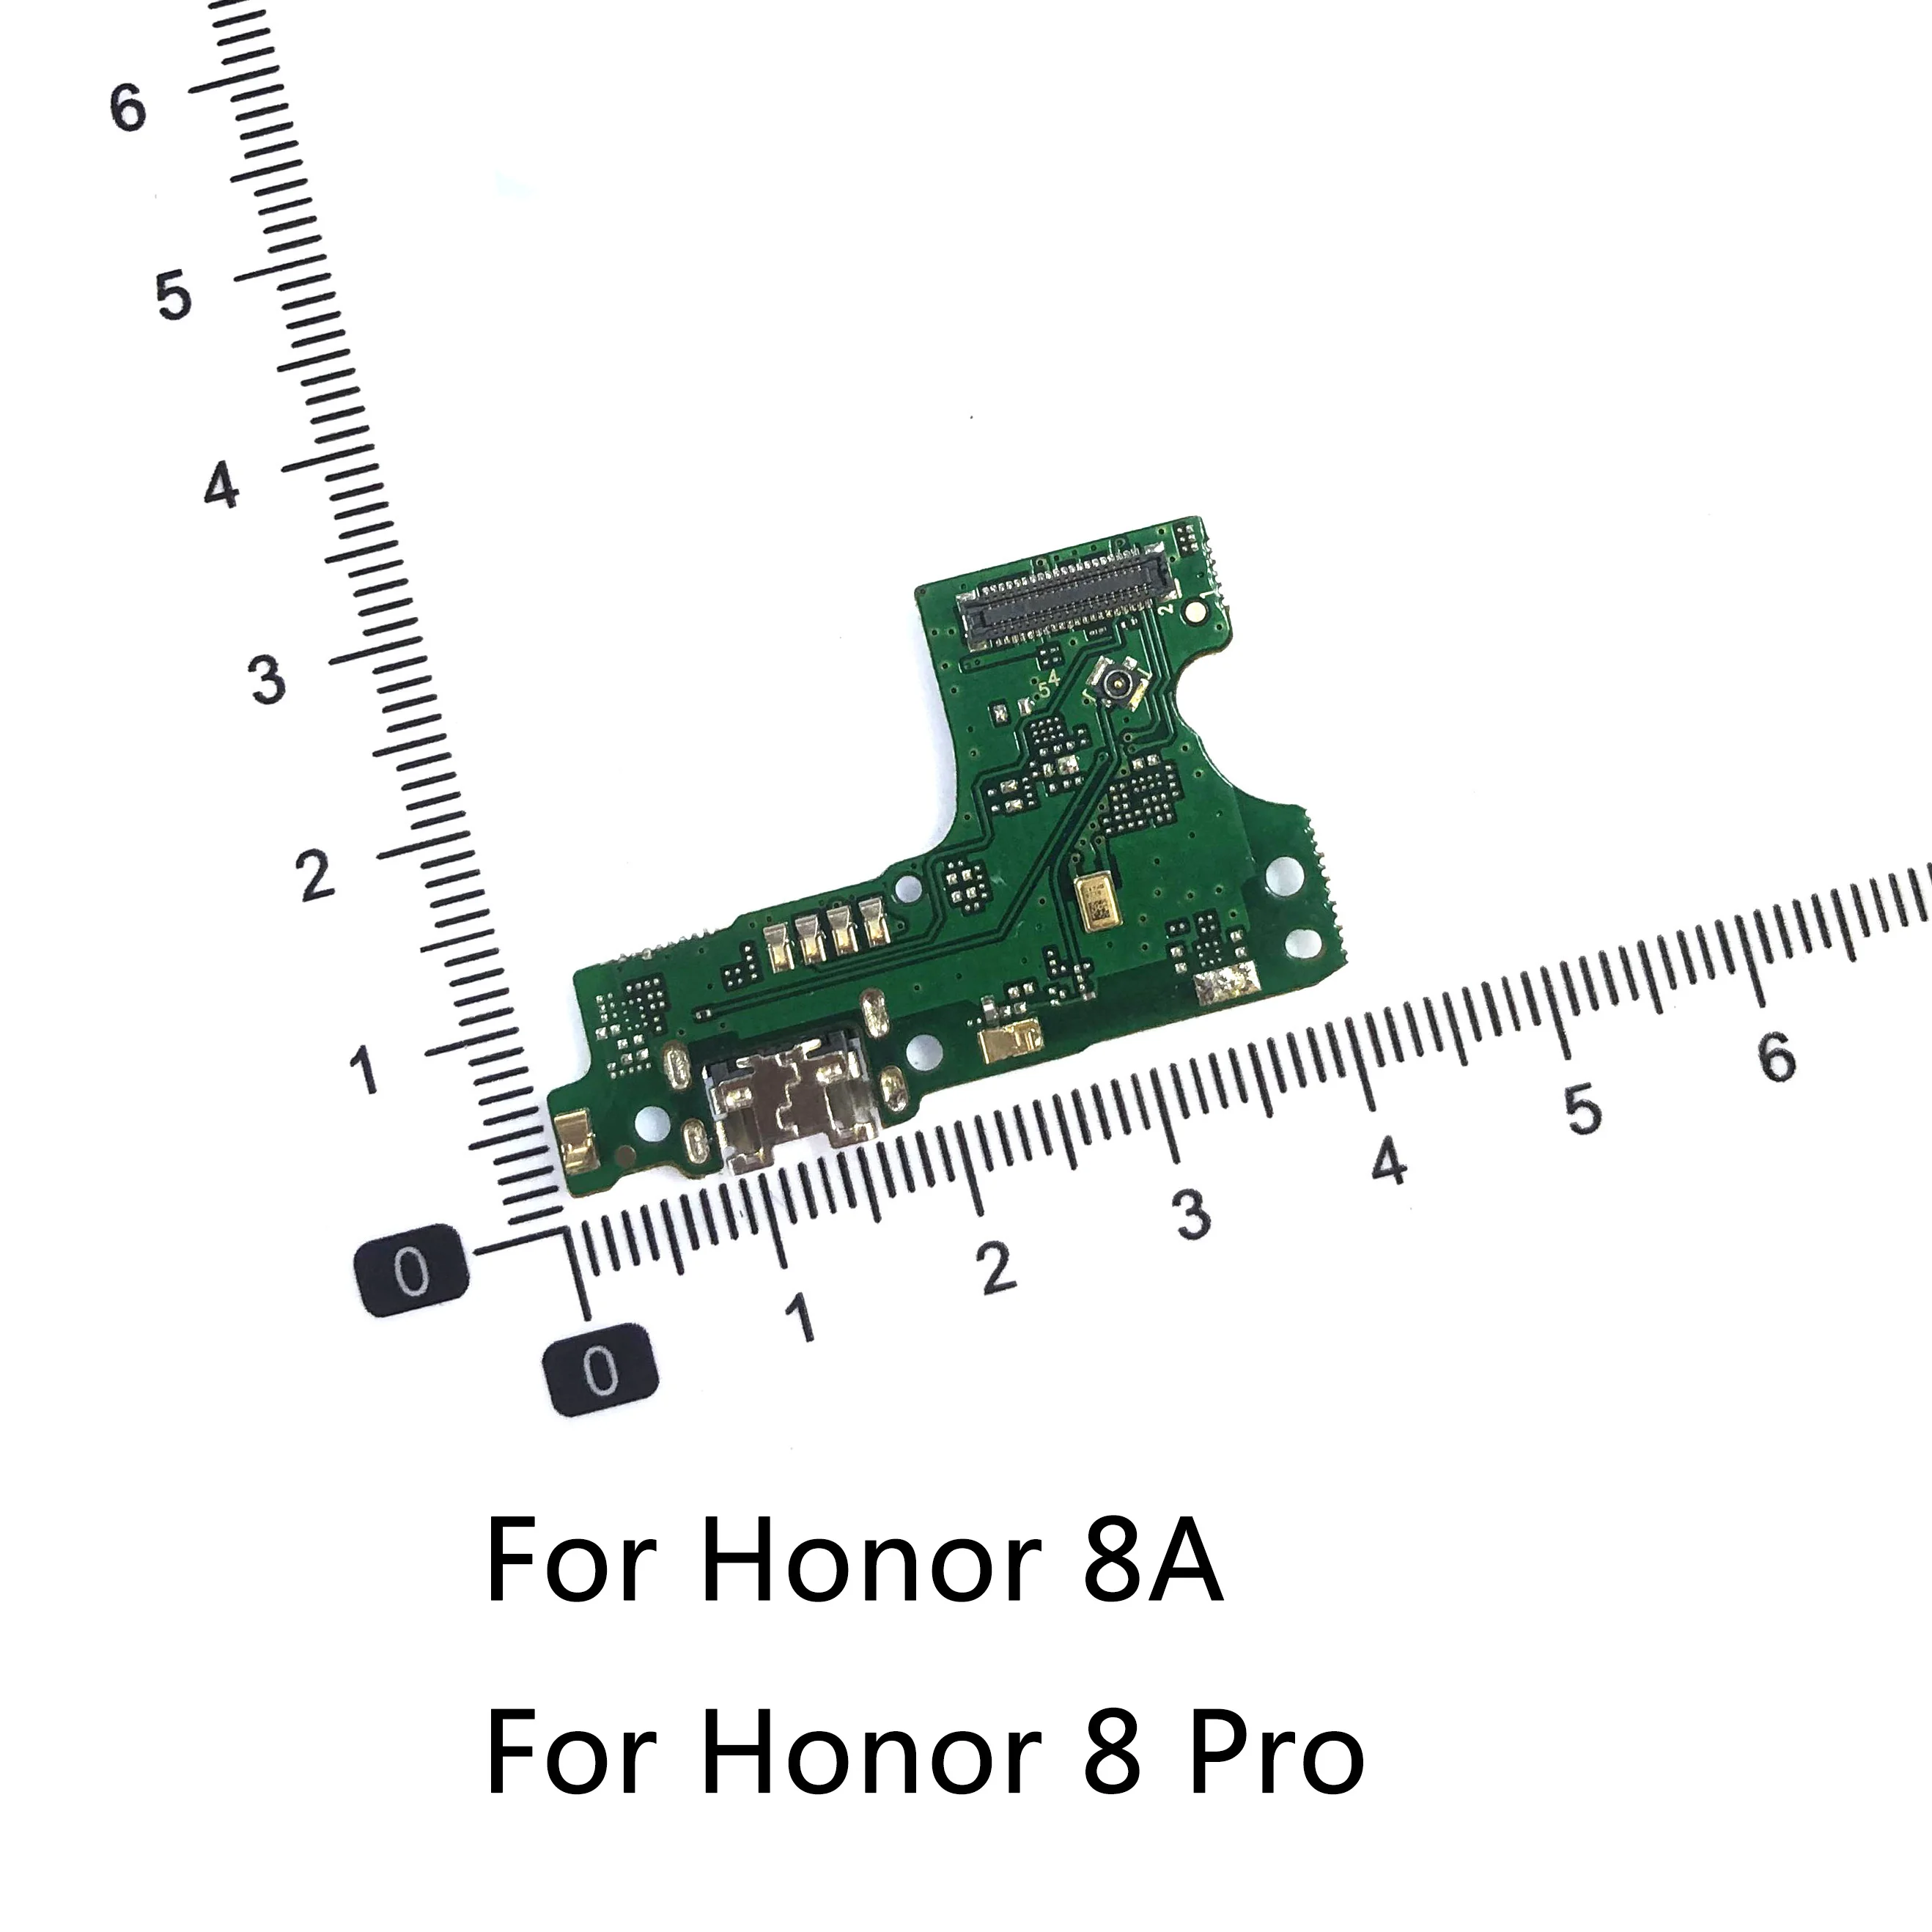 For Huawei 8 8 Lite Pro 8A 8B 8X Til Ære 8X Antal Kredsløb USB-Opladning, Dock-Port Stik til Jack-Stikket Oplade Board Flex Kabel - 5